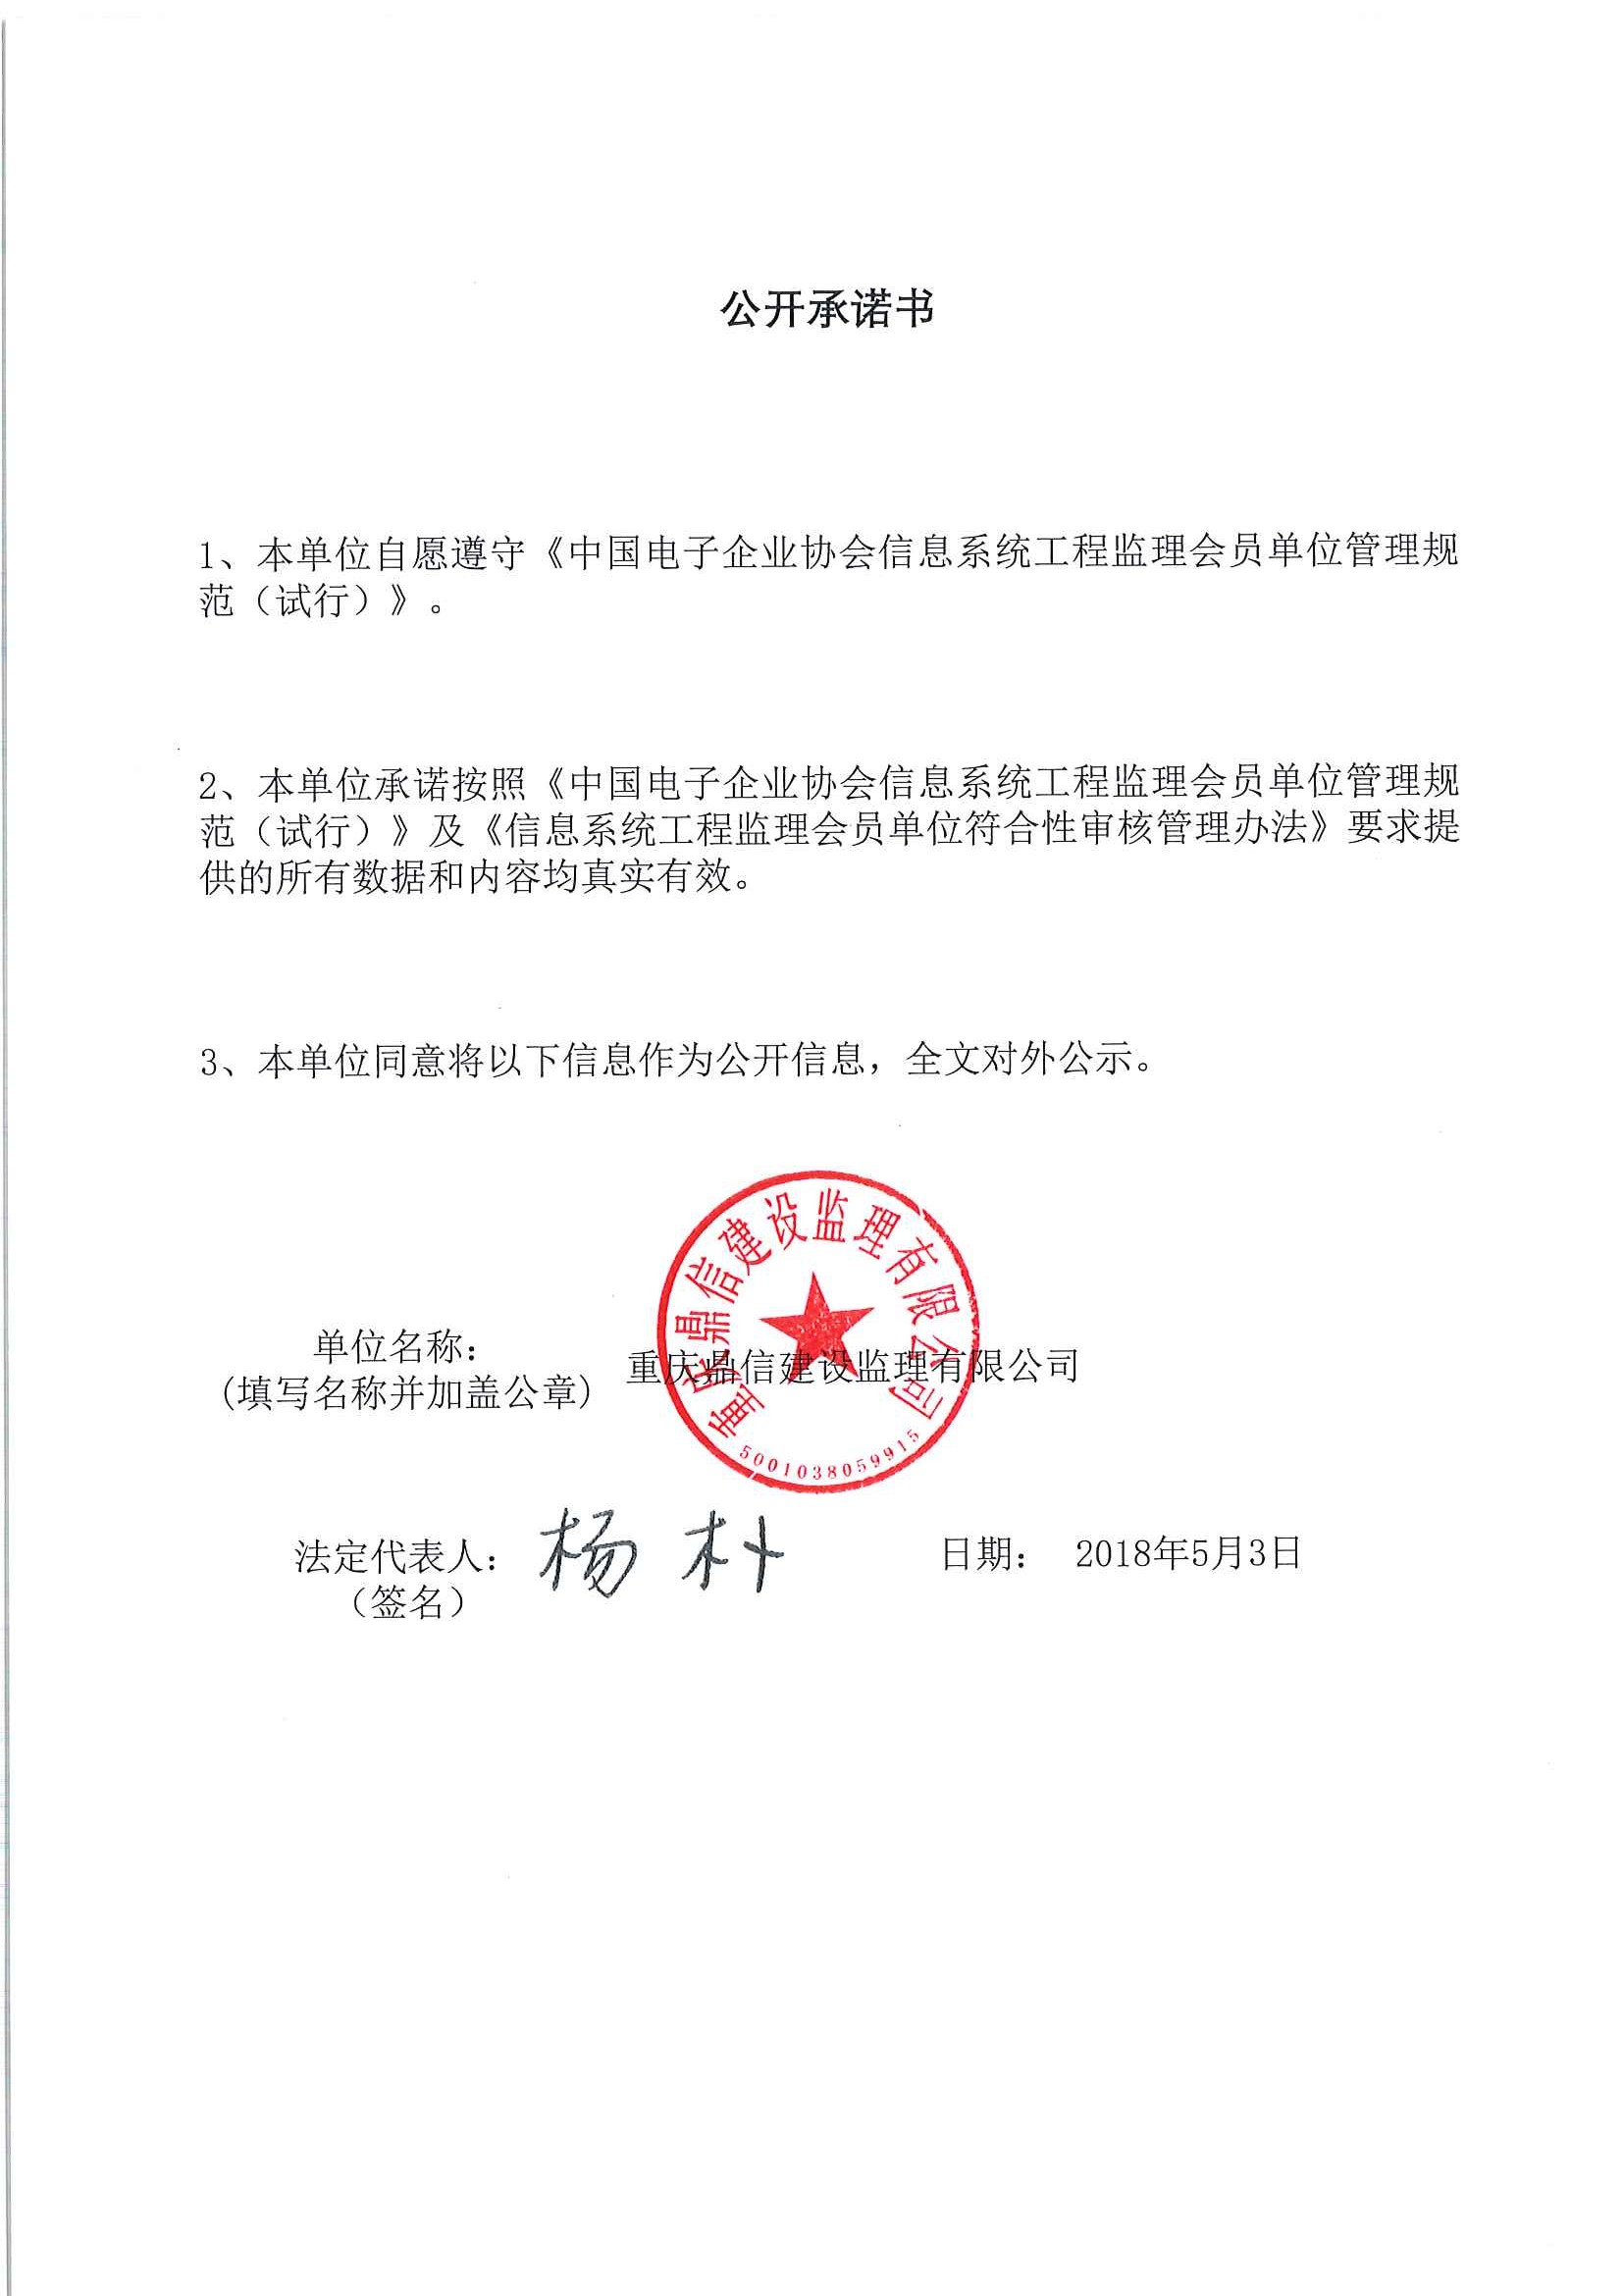 重庆鼎信建设监理有限公司信息系统工程监理资质证书